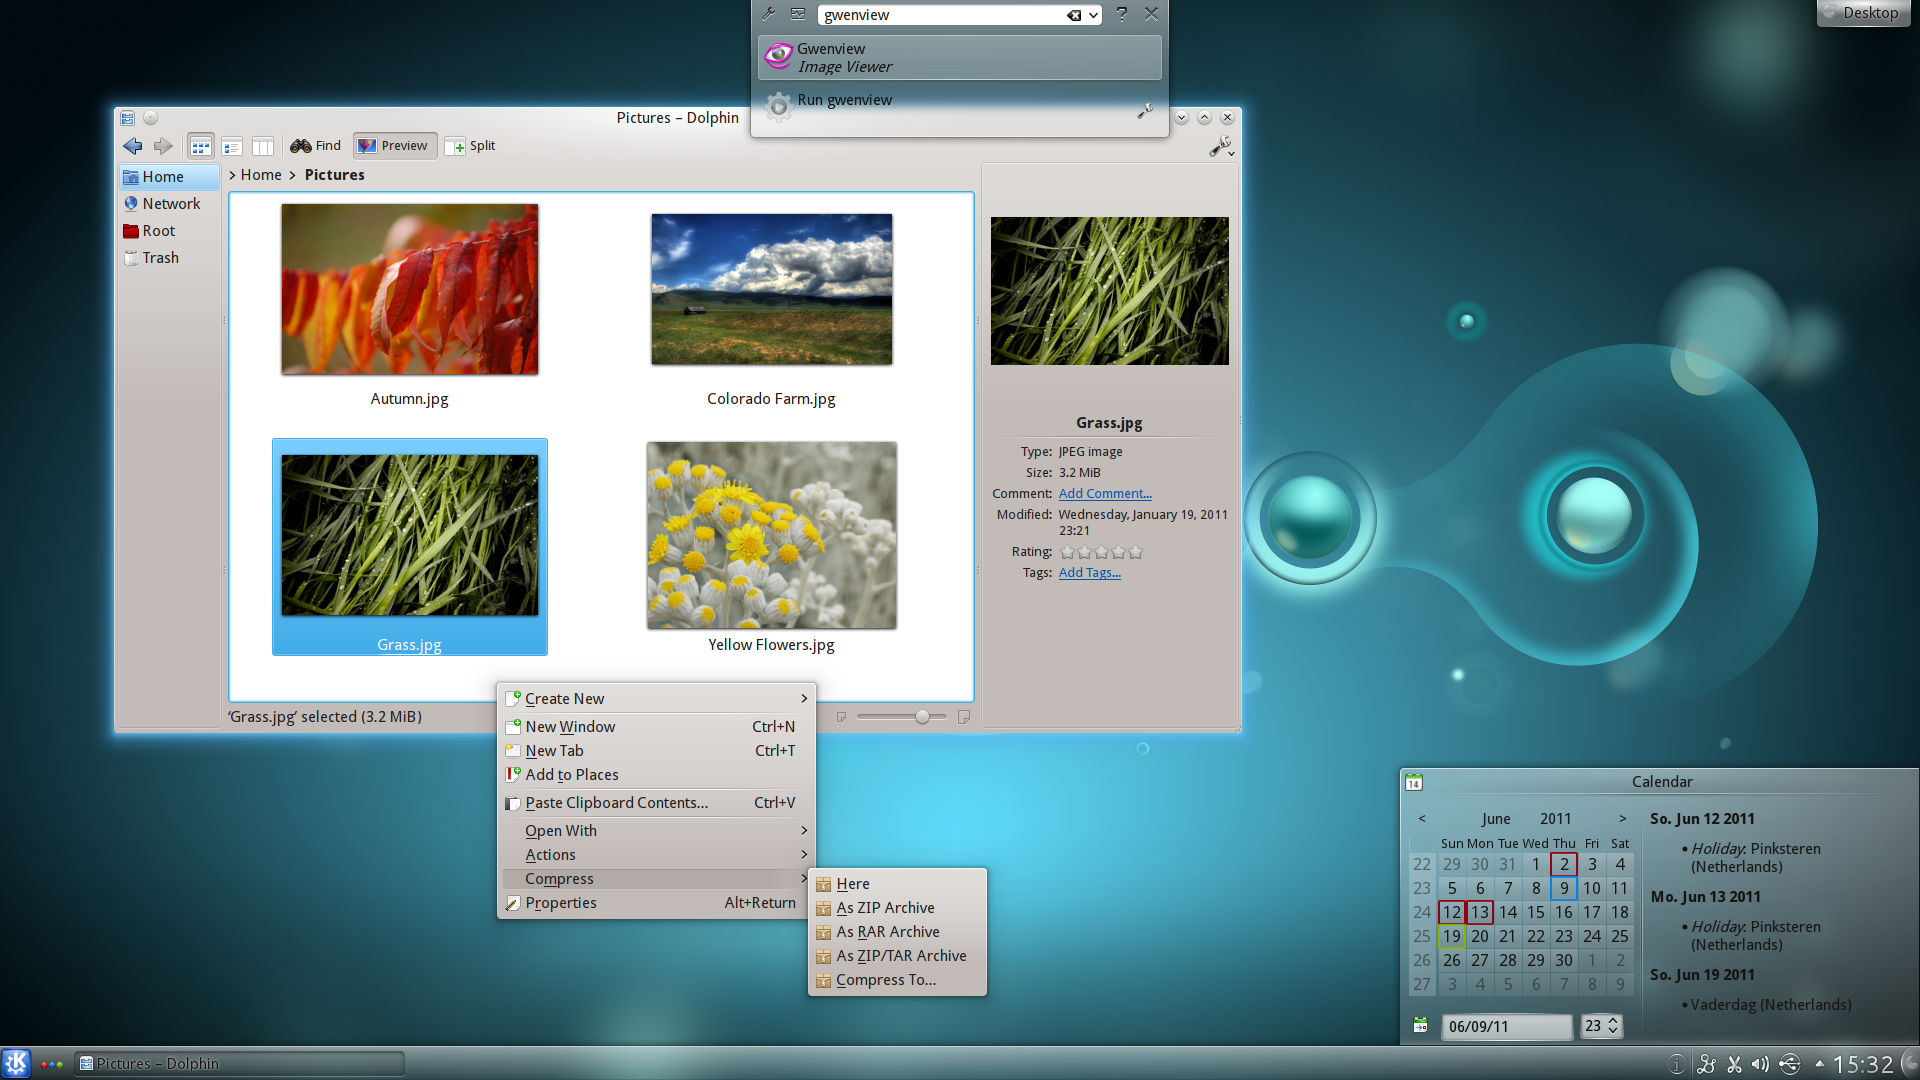 Lançado KDE 4.7, repleto de novidades